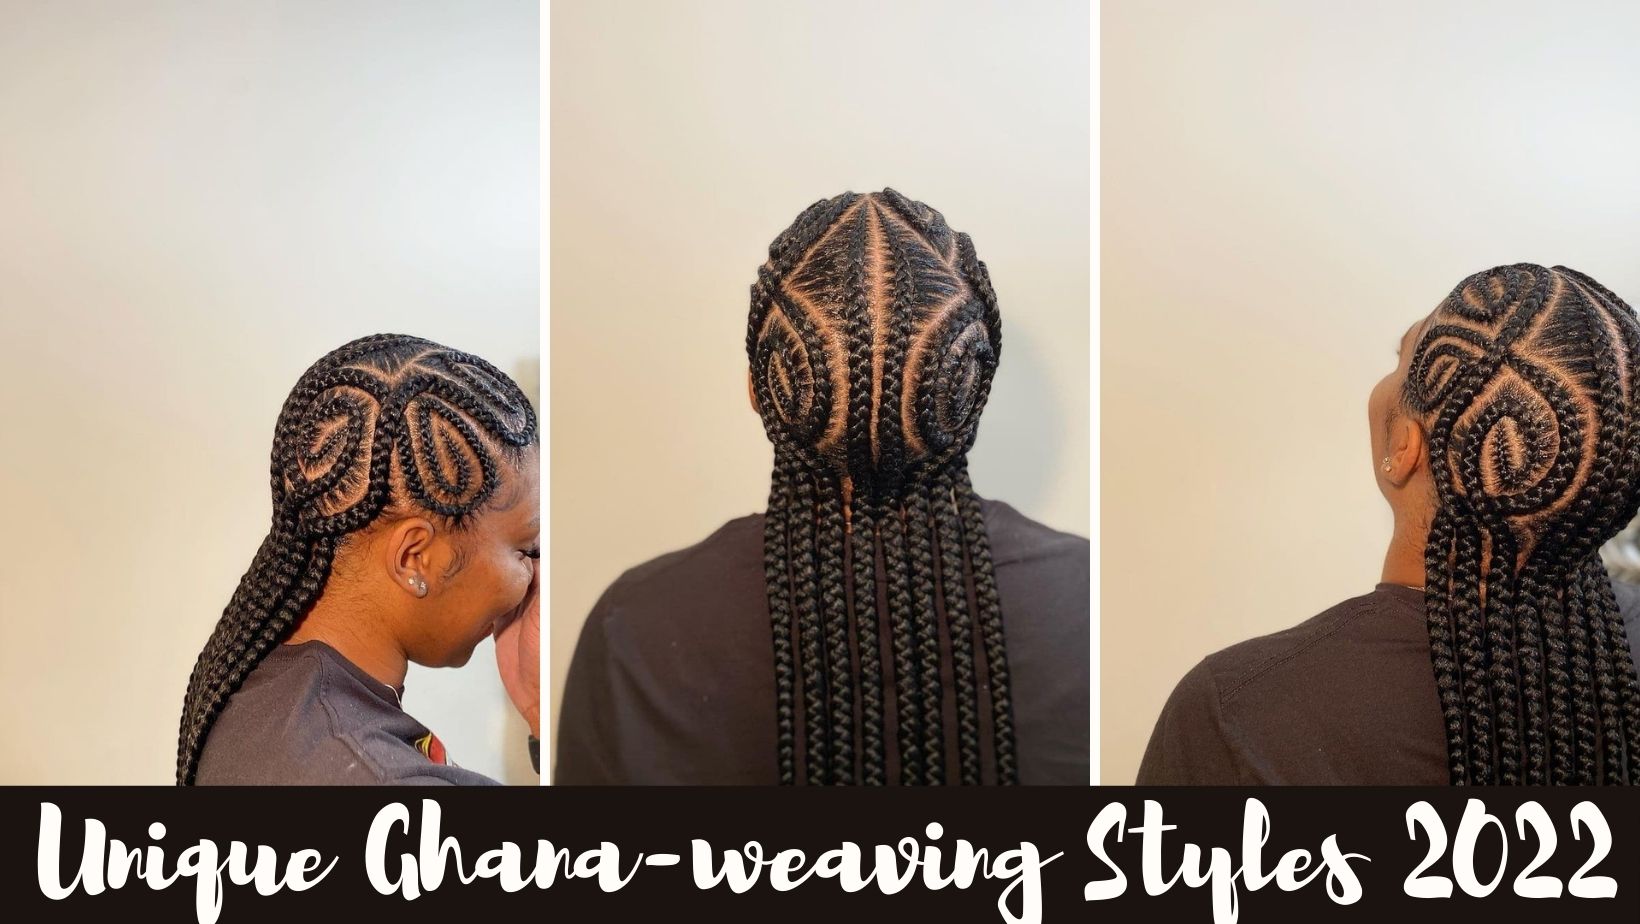 Ghana-weaving styles